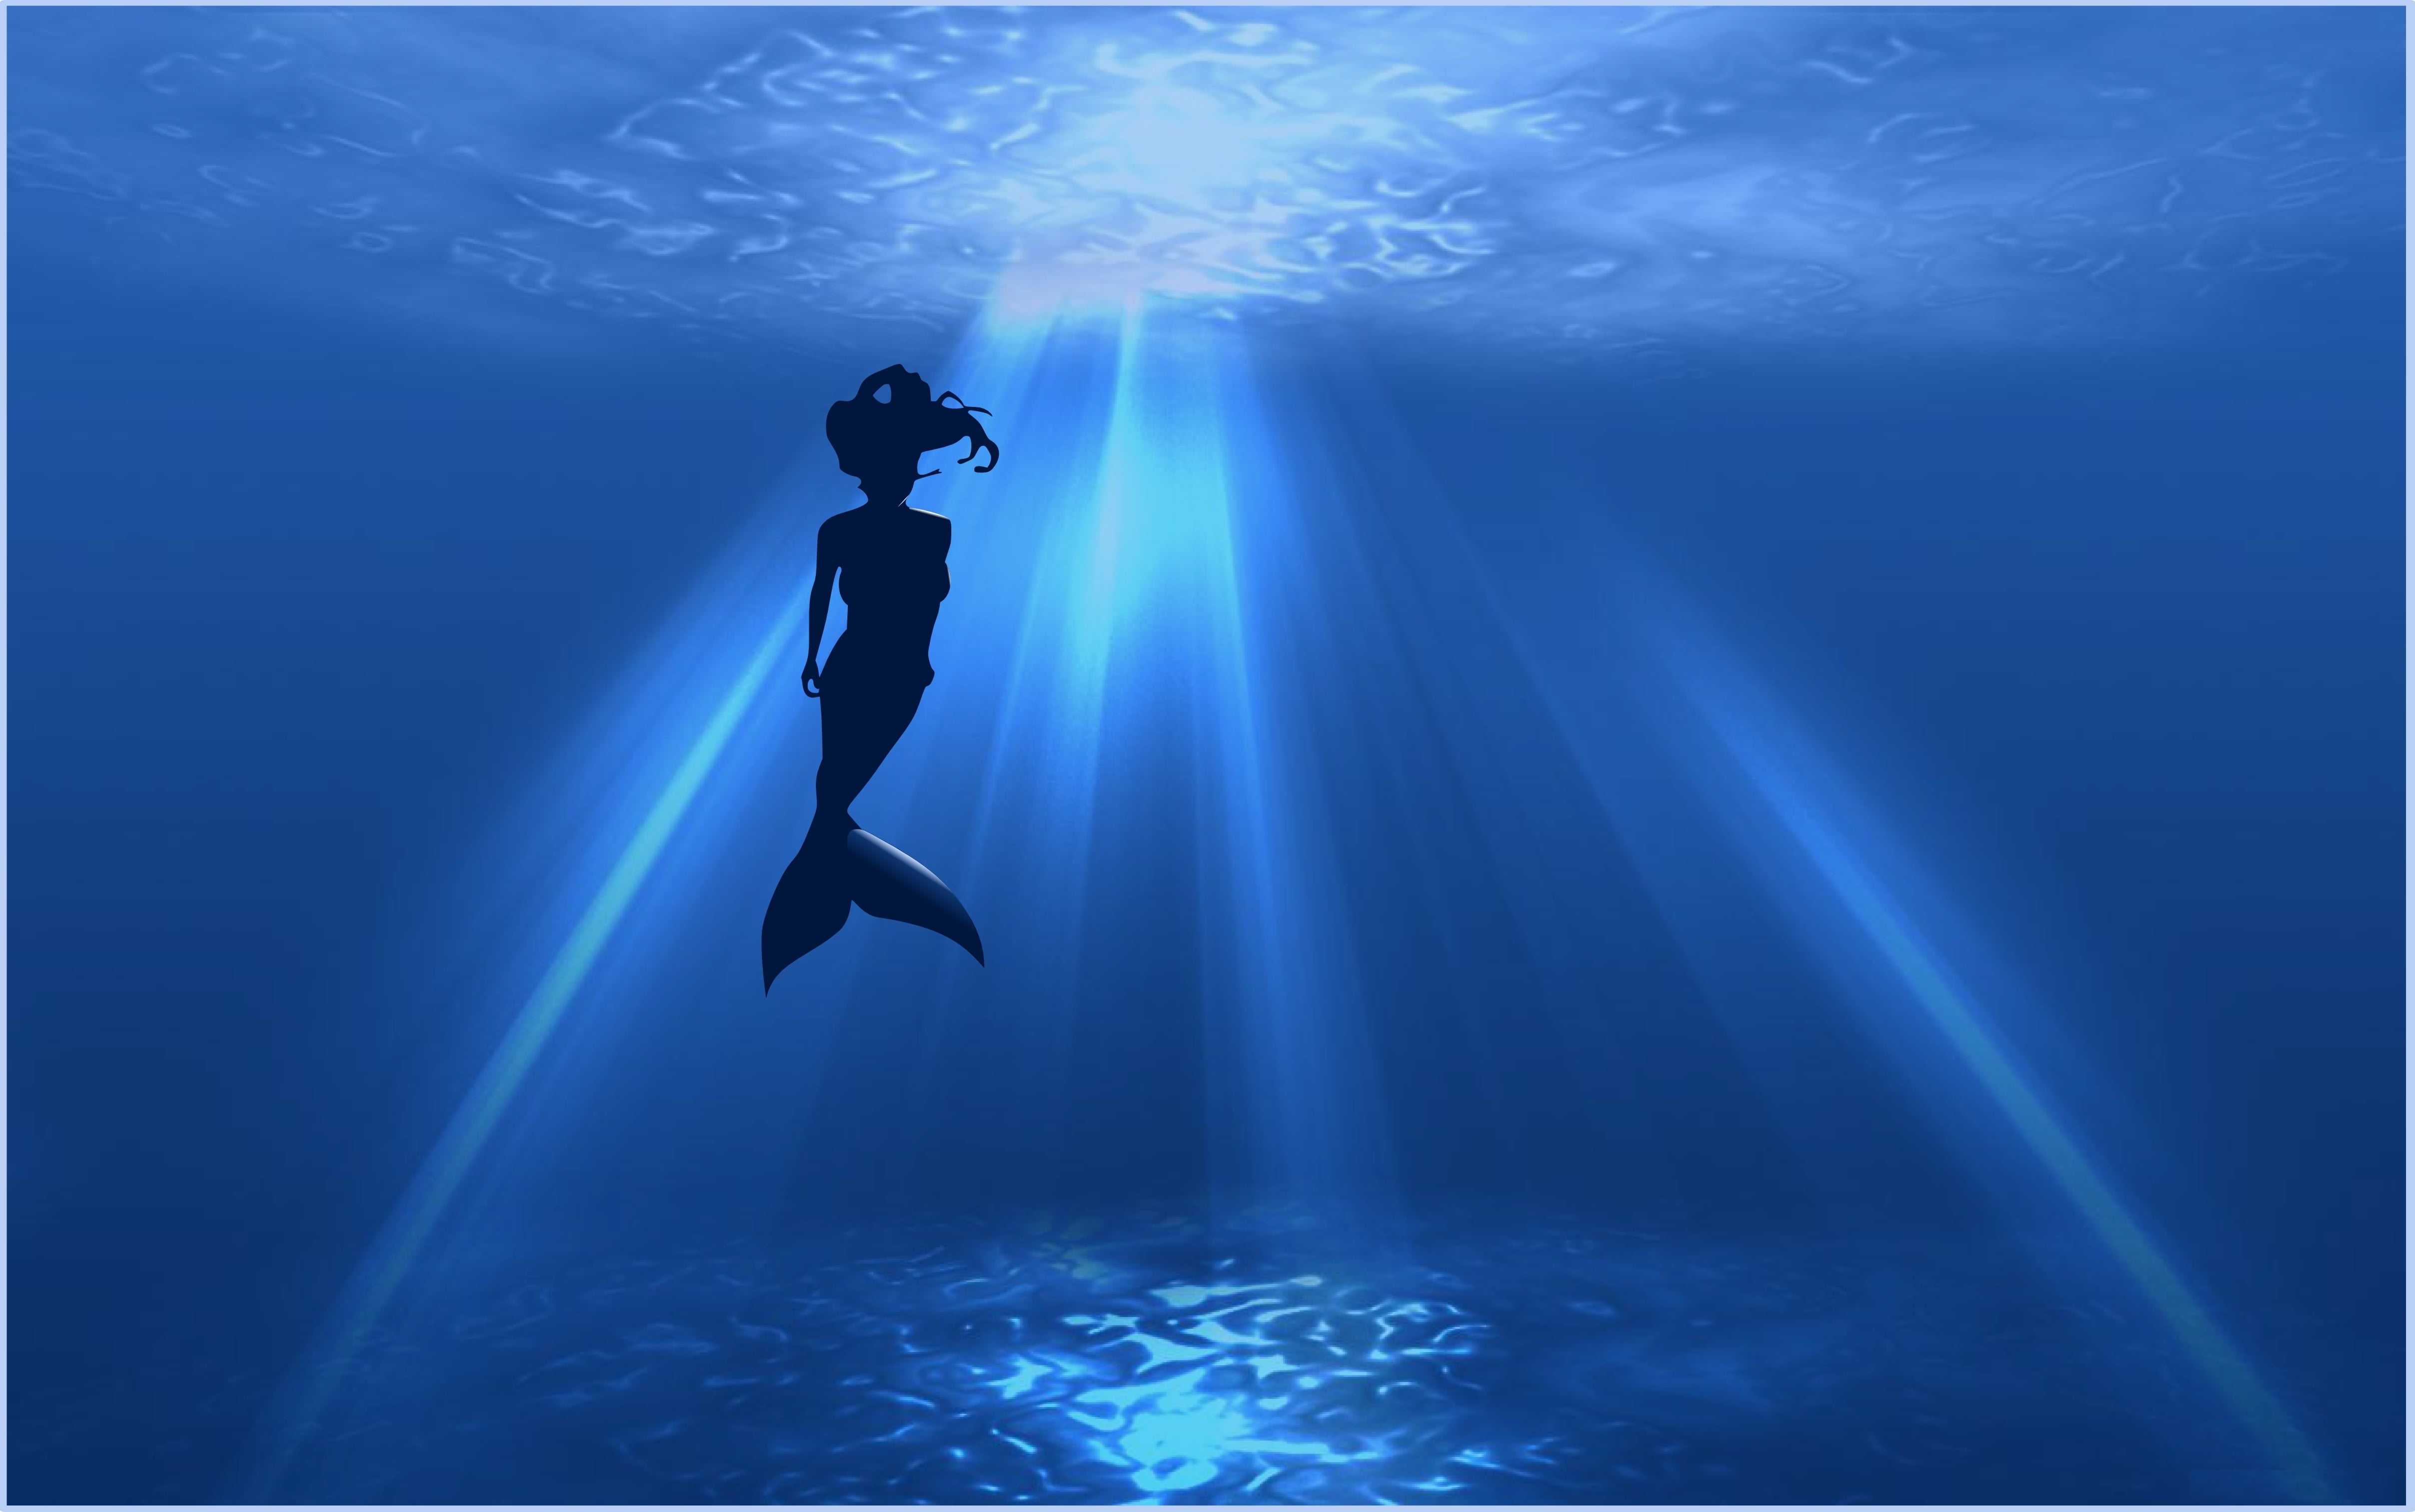 mermaid clip art, sea, the ocean, silhouette, the sun's rays